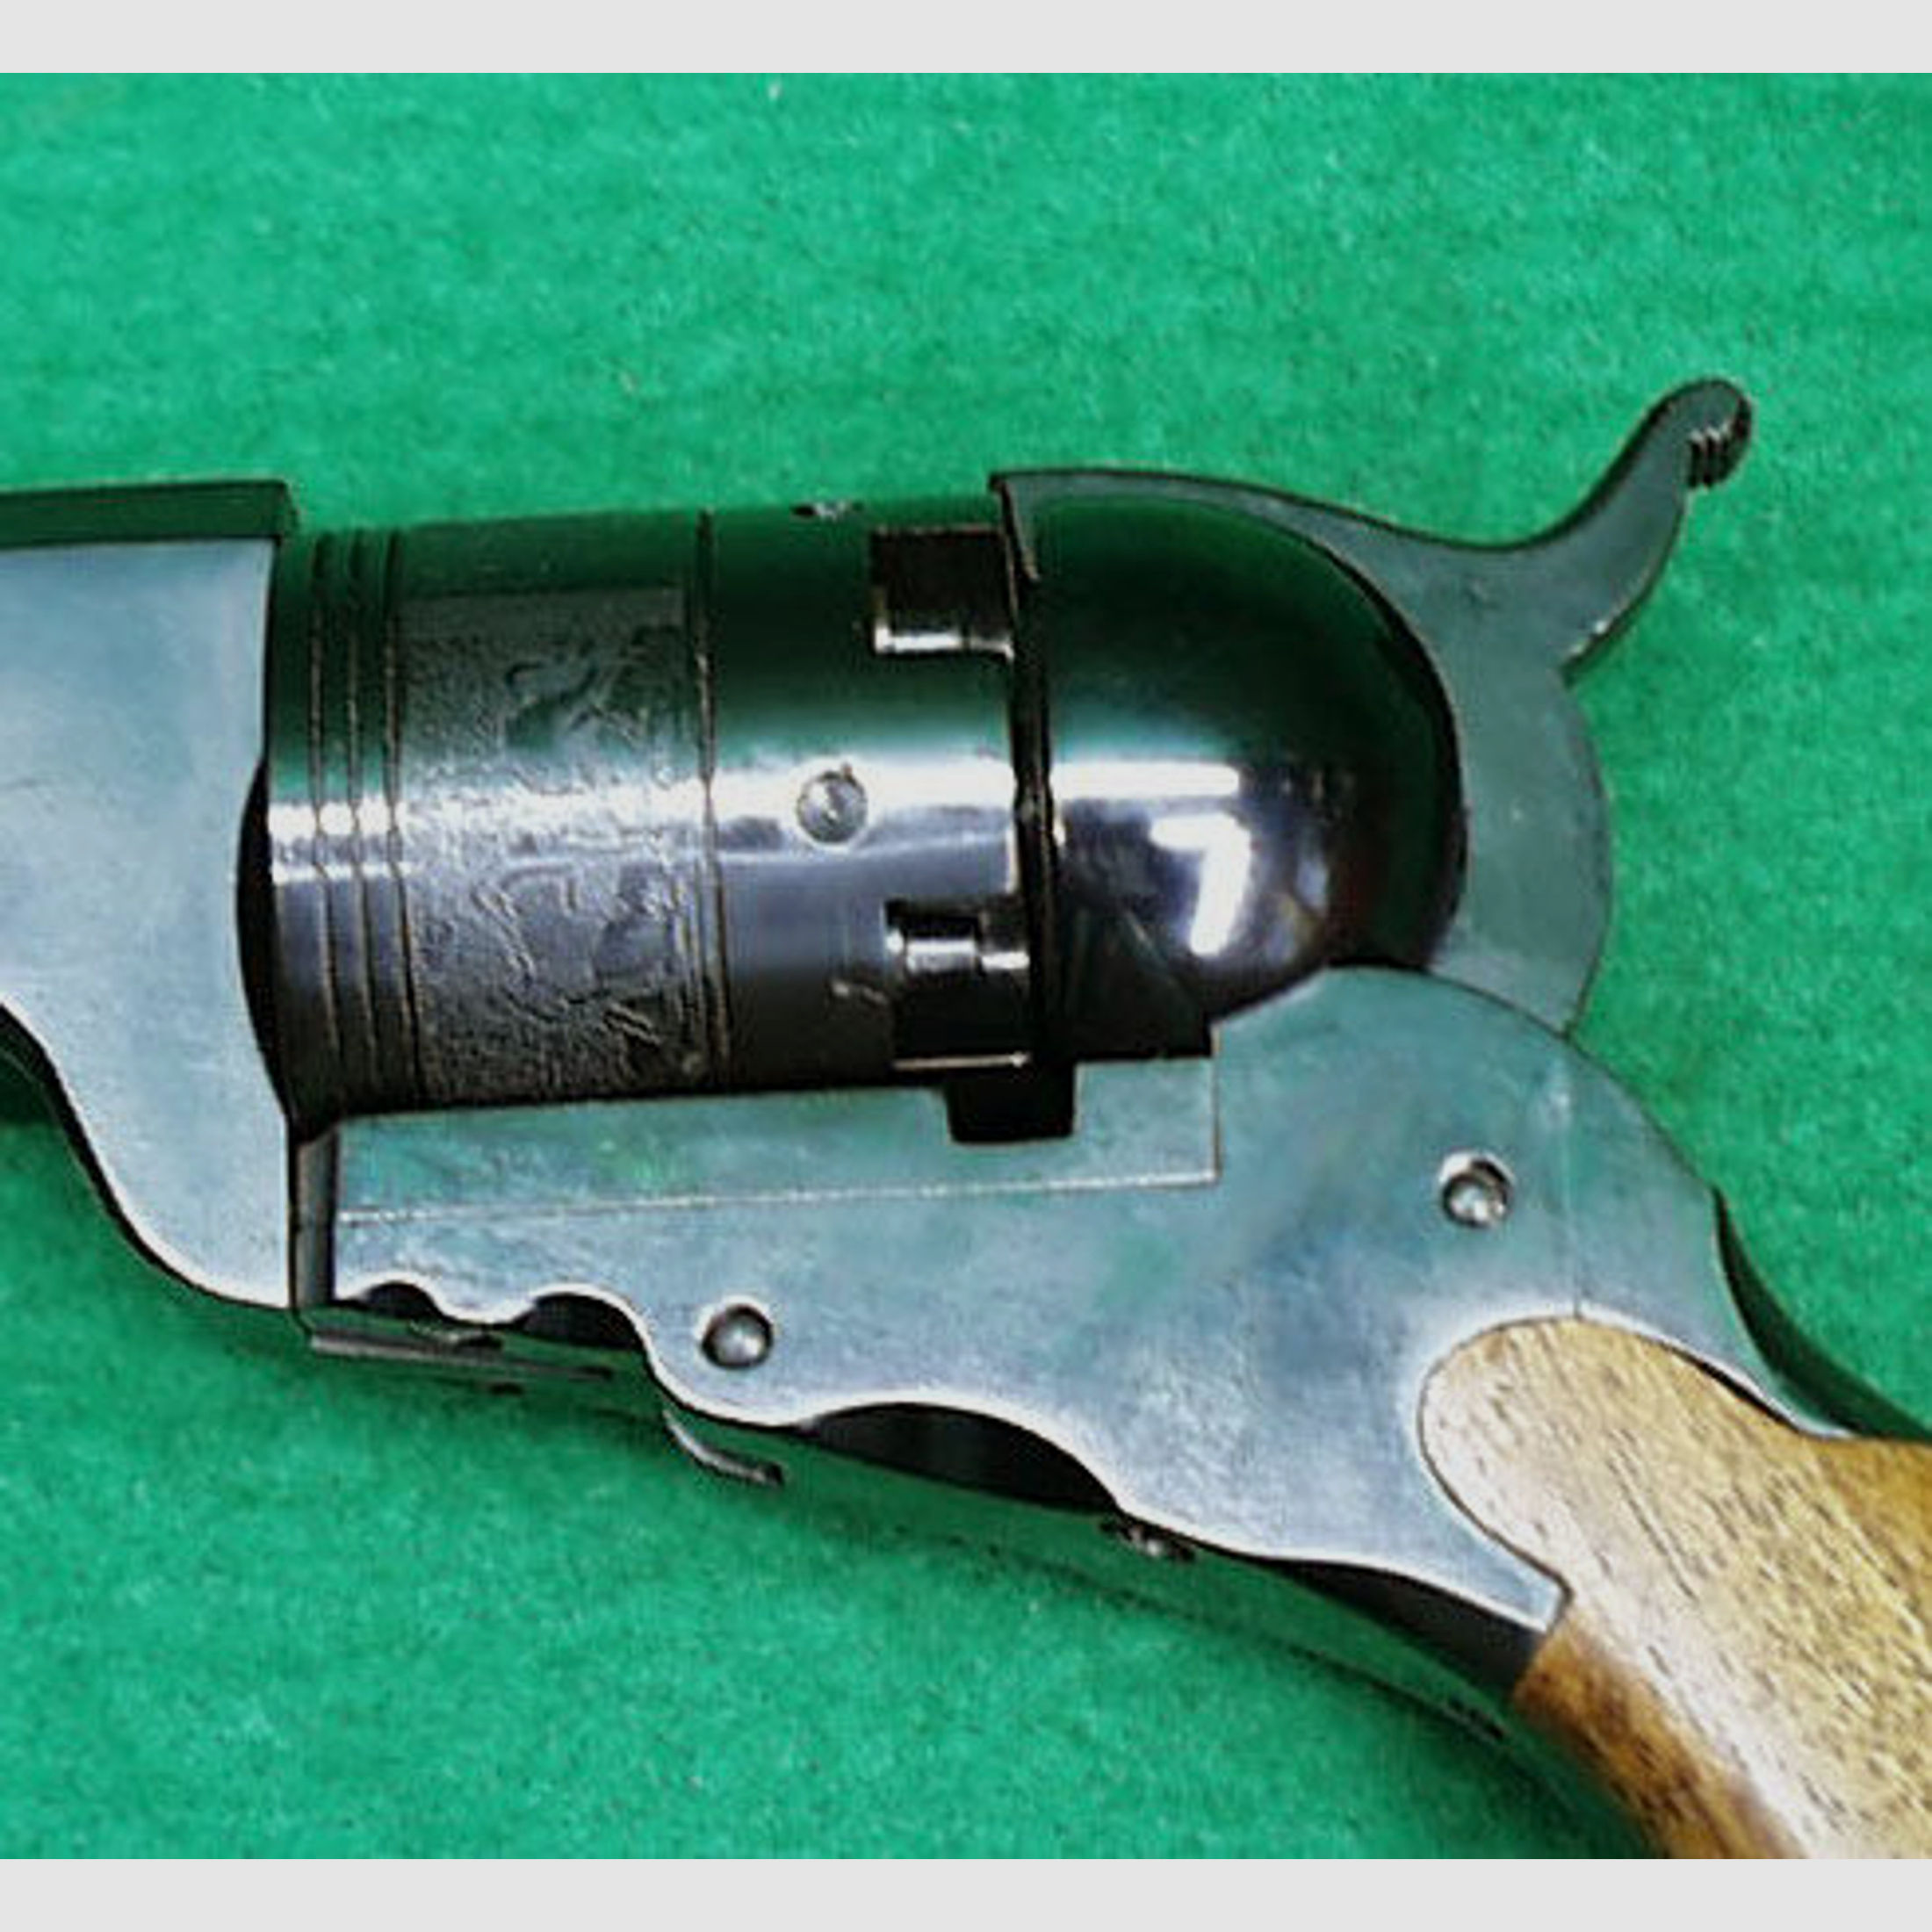 Pietta	 Colt 1836 Paterson